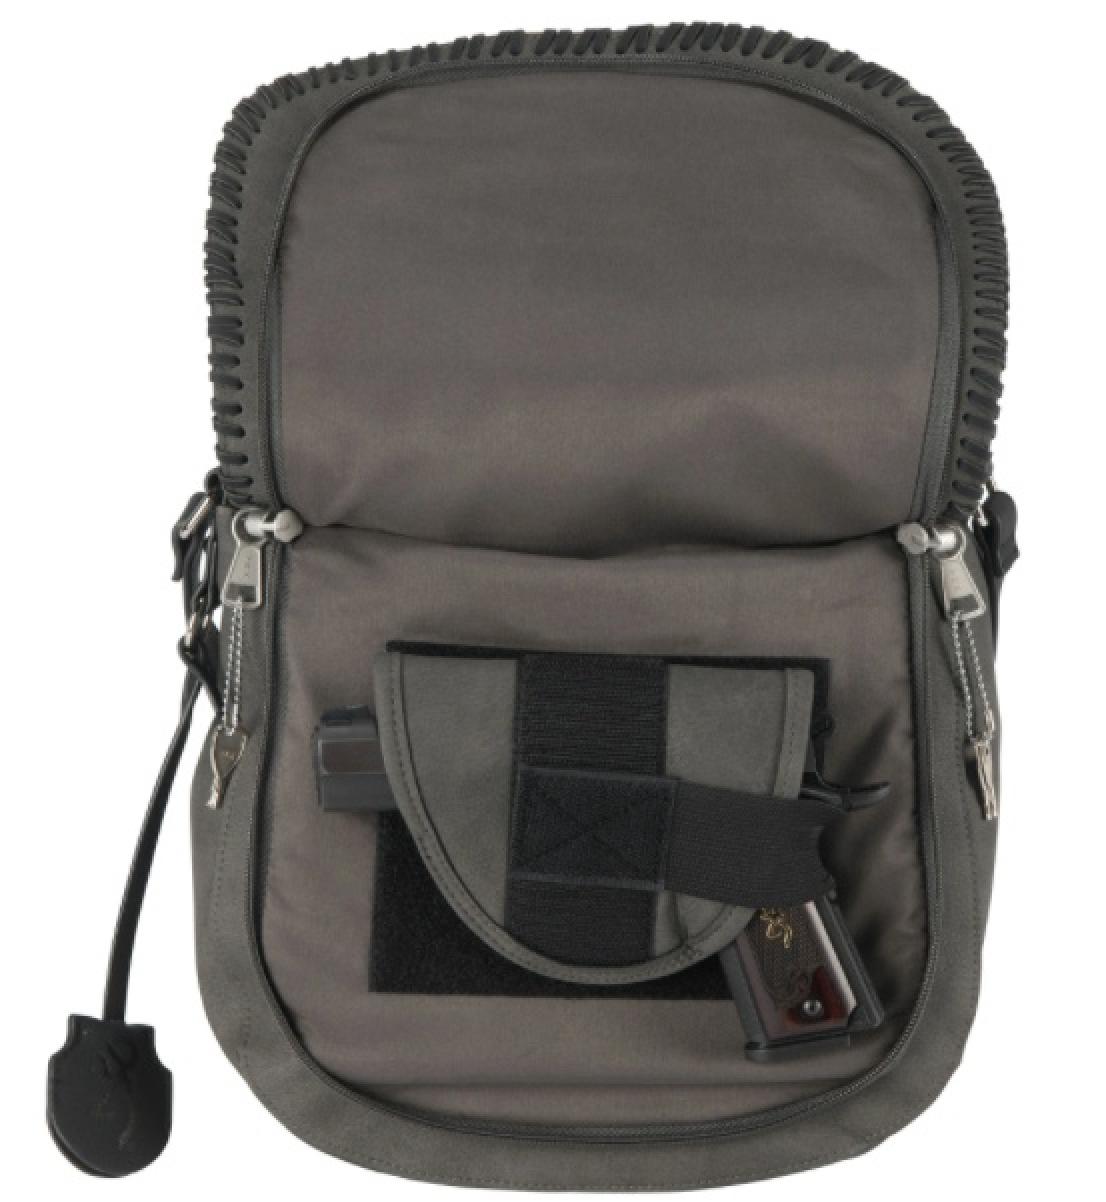 Browning Concealed Carry Oakley Handbag Gun in Concealed Carry Pocket